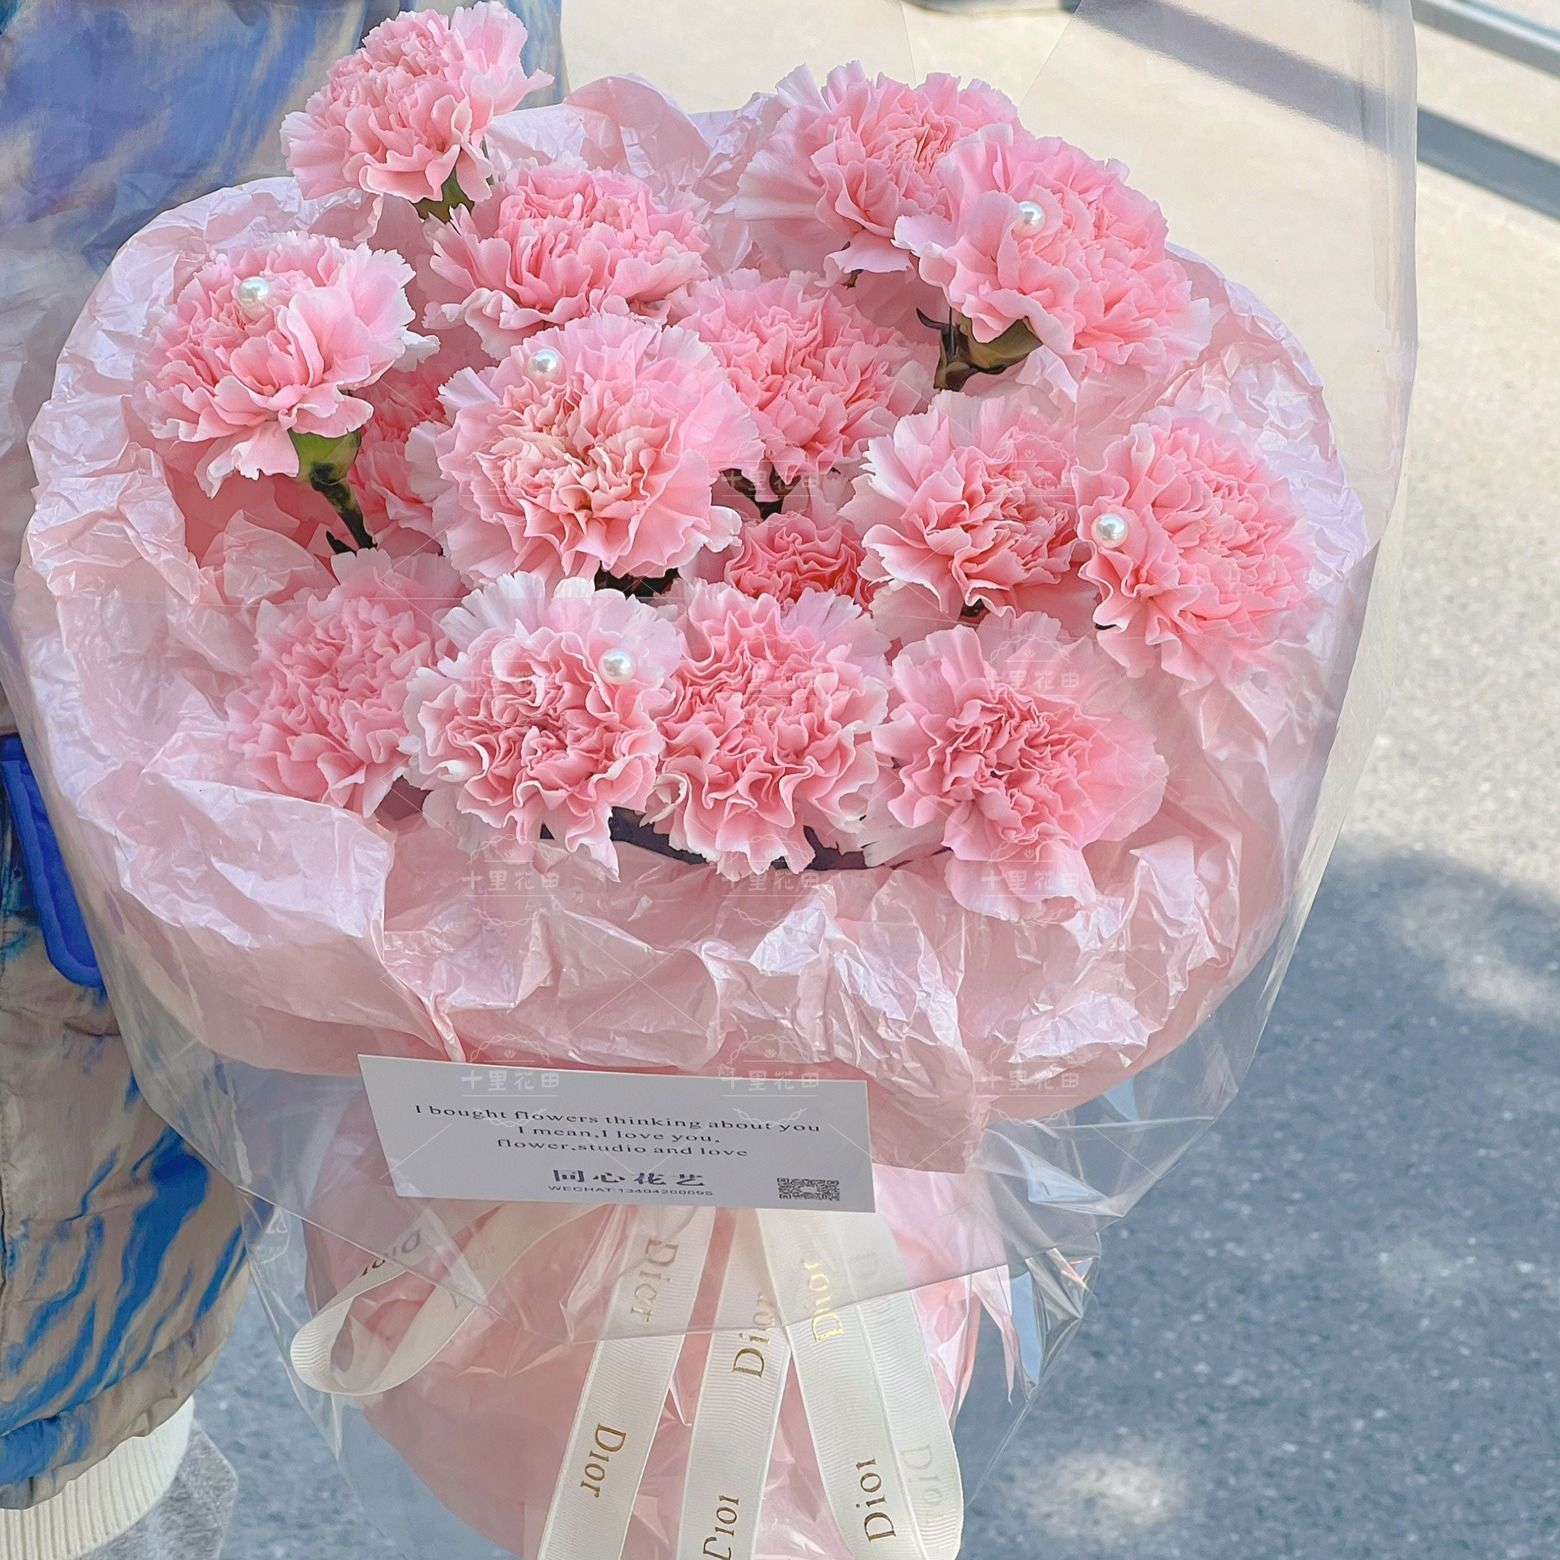 【心怀感恩】鲜花21朵粉康乃馨花束生日鲜花生日礼物送爱人长辈花店送花上门鲜花配送